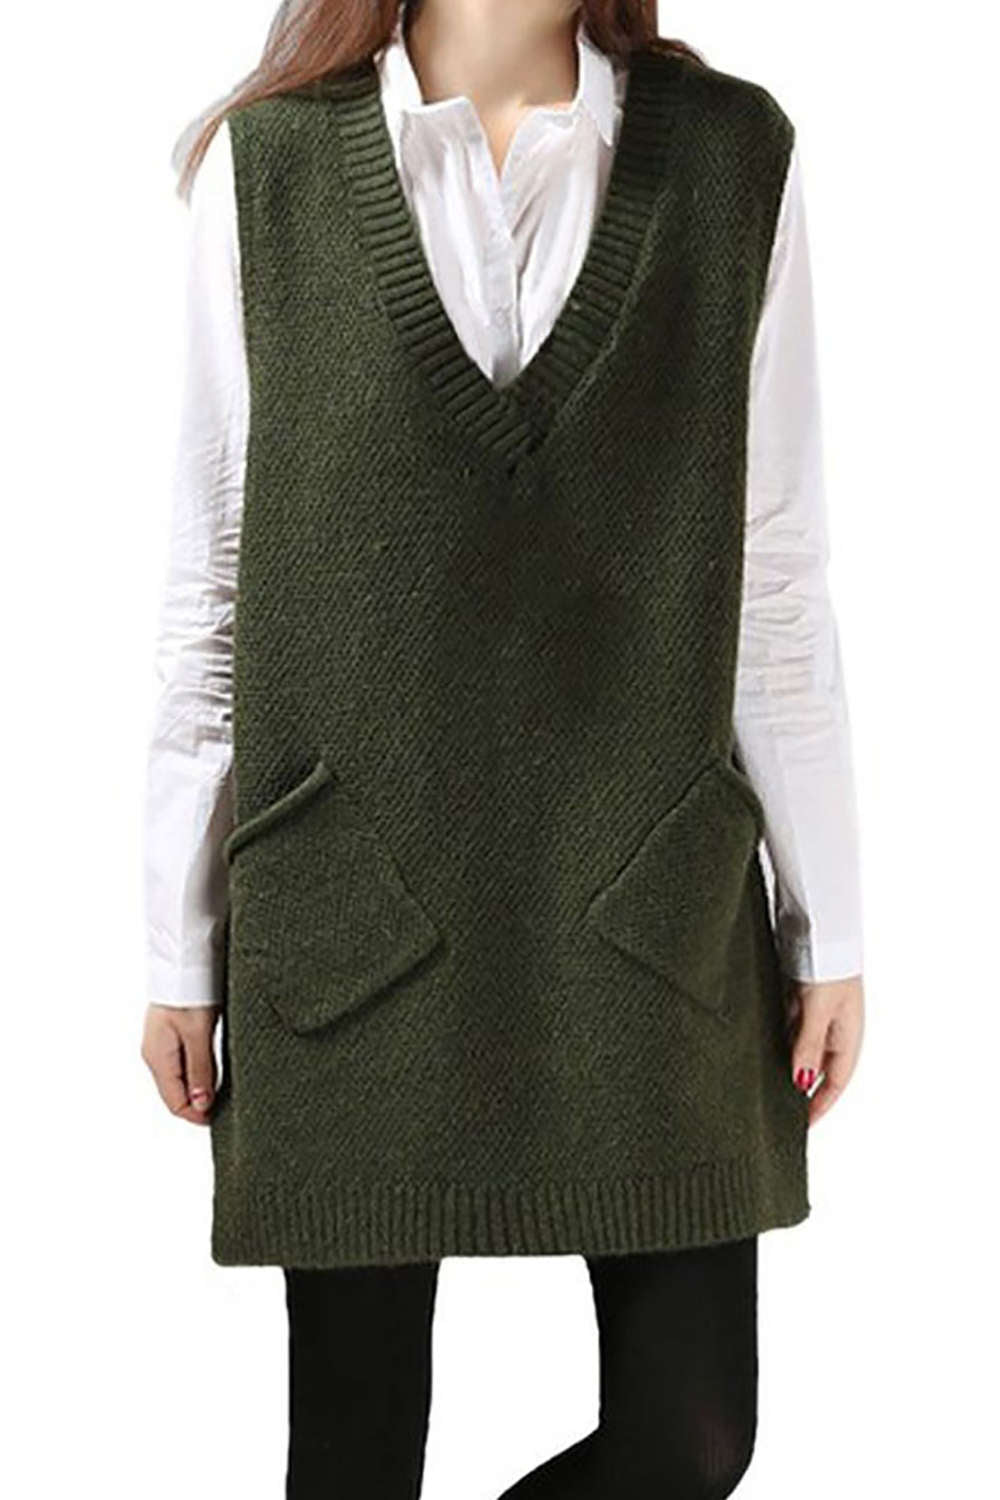 Iyasson Womens V-Neck Sleeveless Pullover Long Sweater Vest